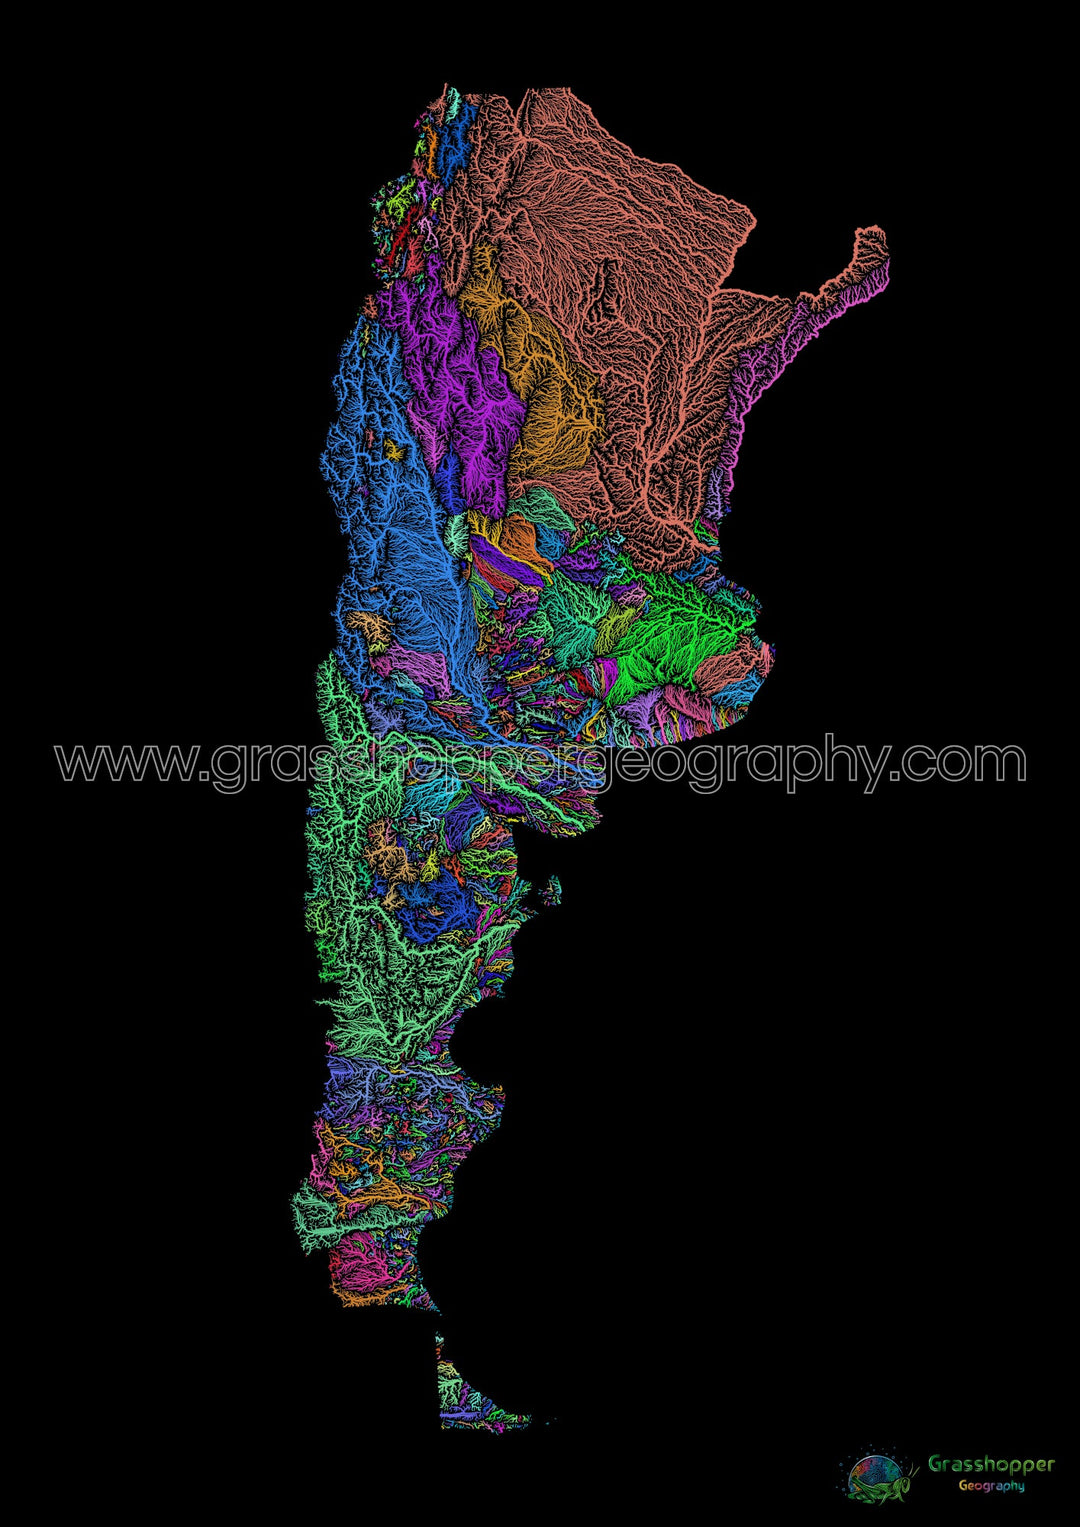 Argentina - Mapa de cuencas hidrográficas, arcoíris sobre negro - Impresión de Bellas Artes